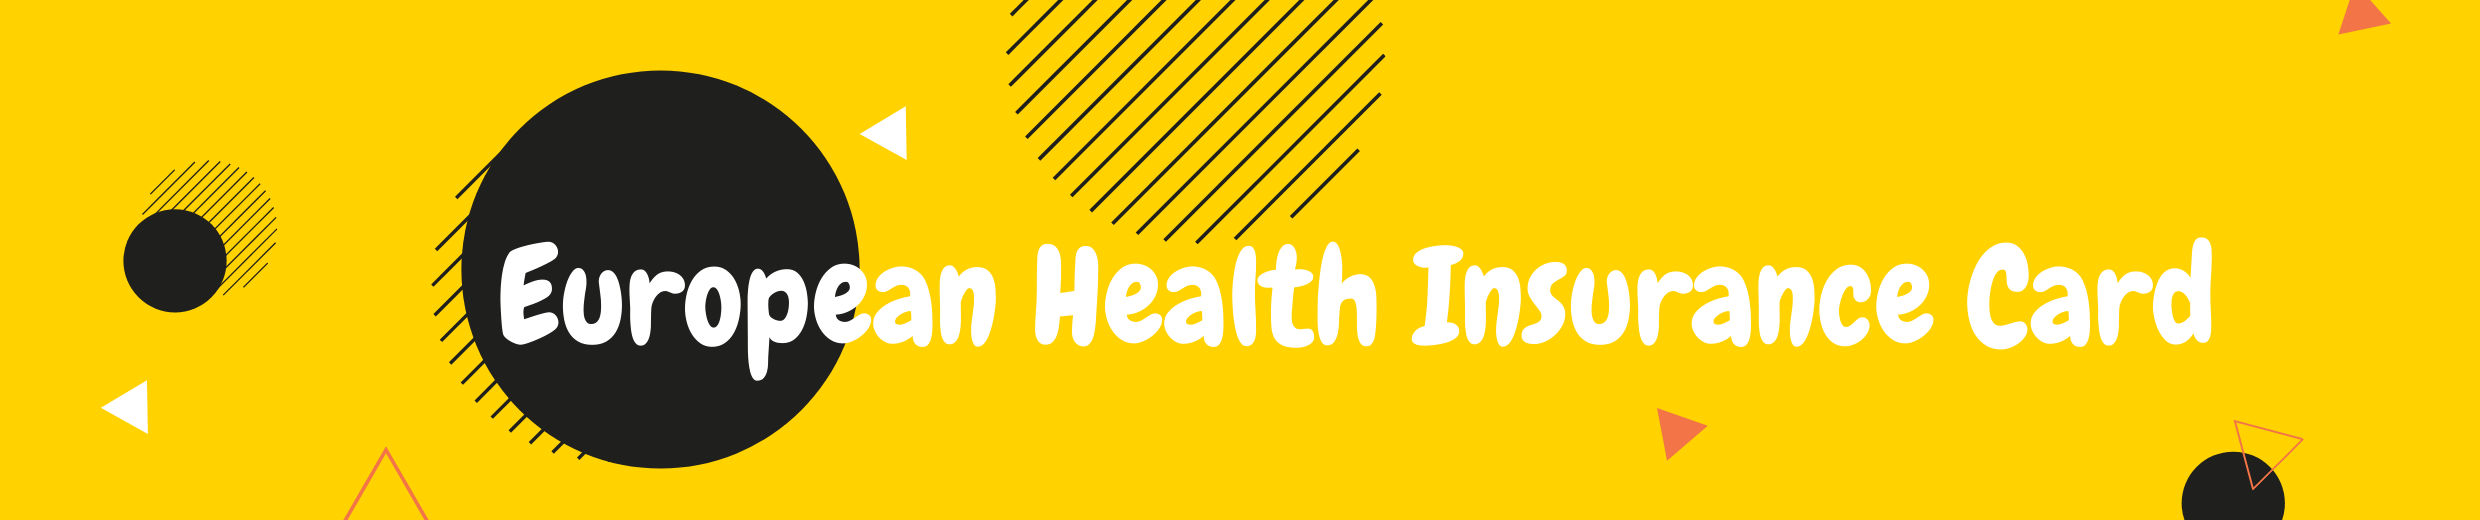 European Health Insurance Card banner